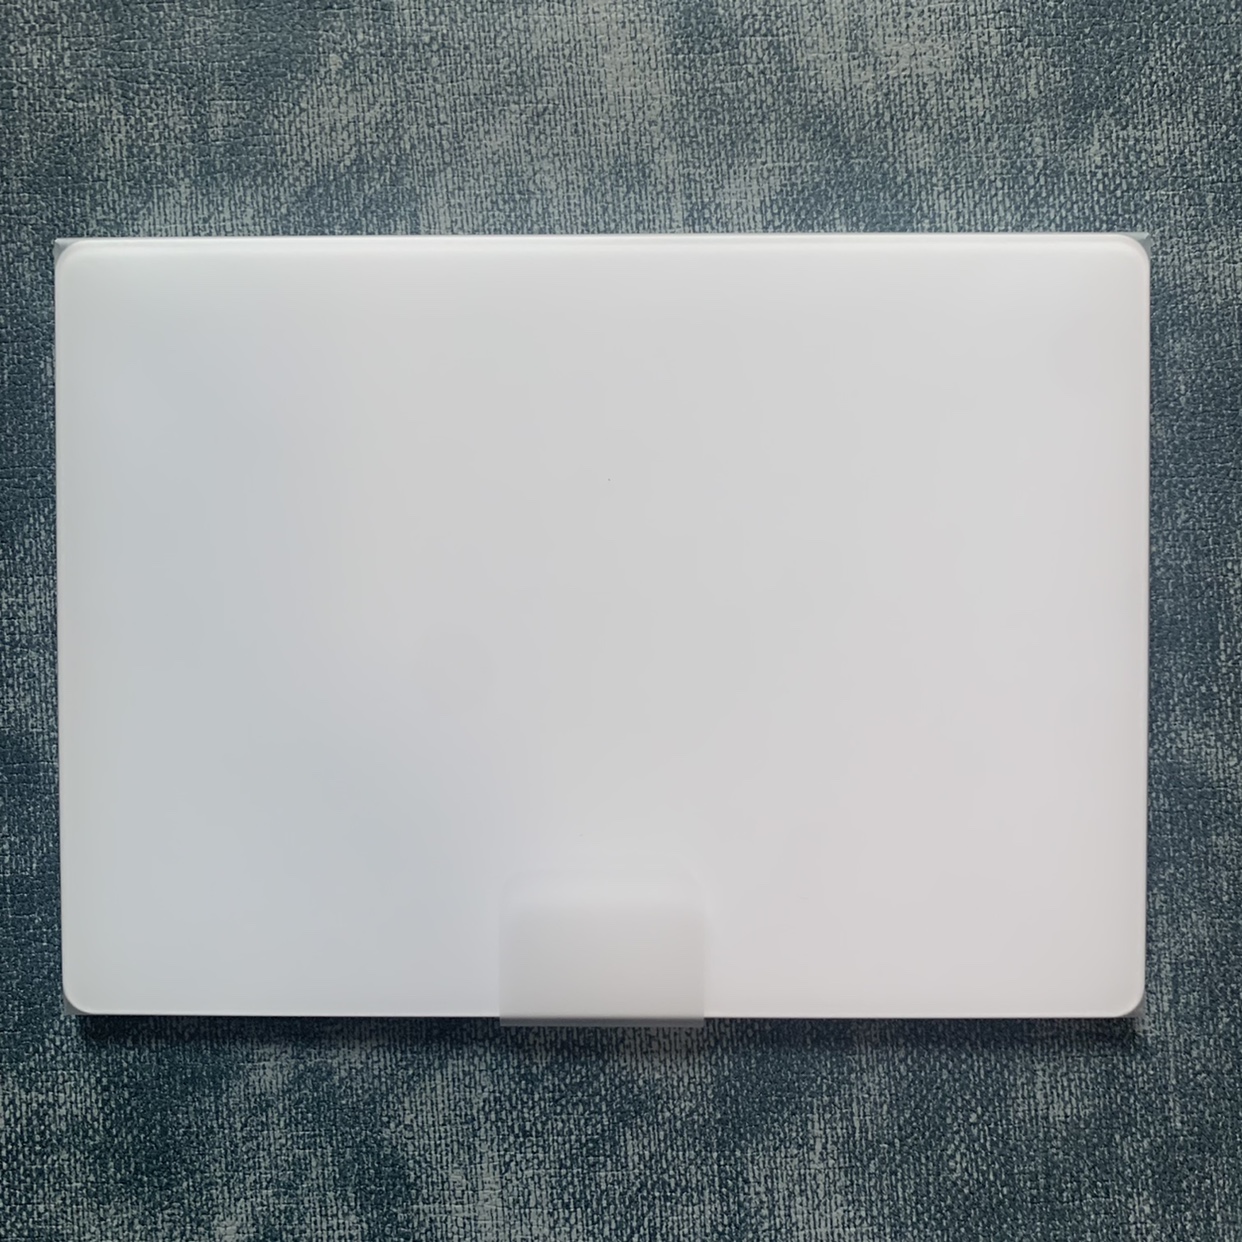 苹果Magic Trackpad 2/3代IMAC苹果笔记本电脑无线蓝牙ipad妙控板 - 图3